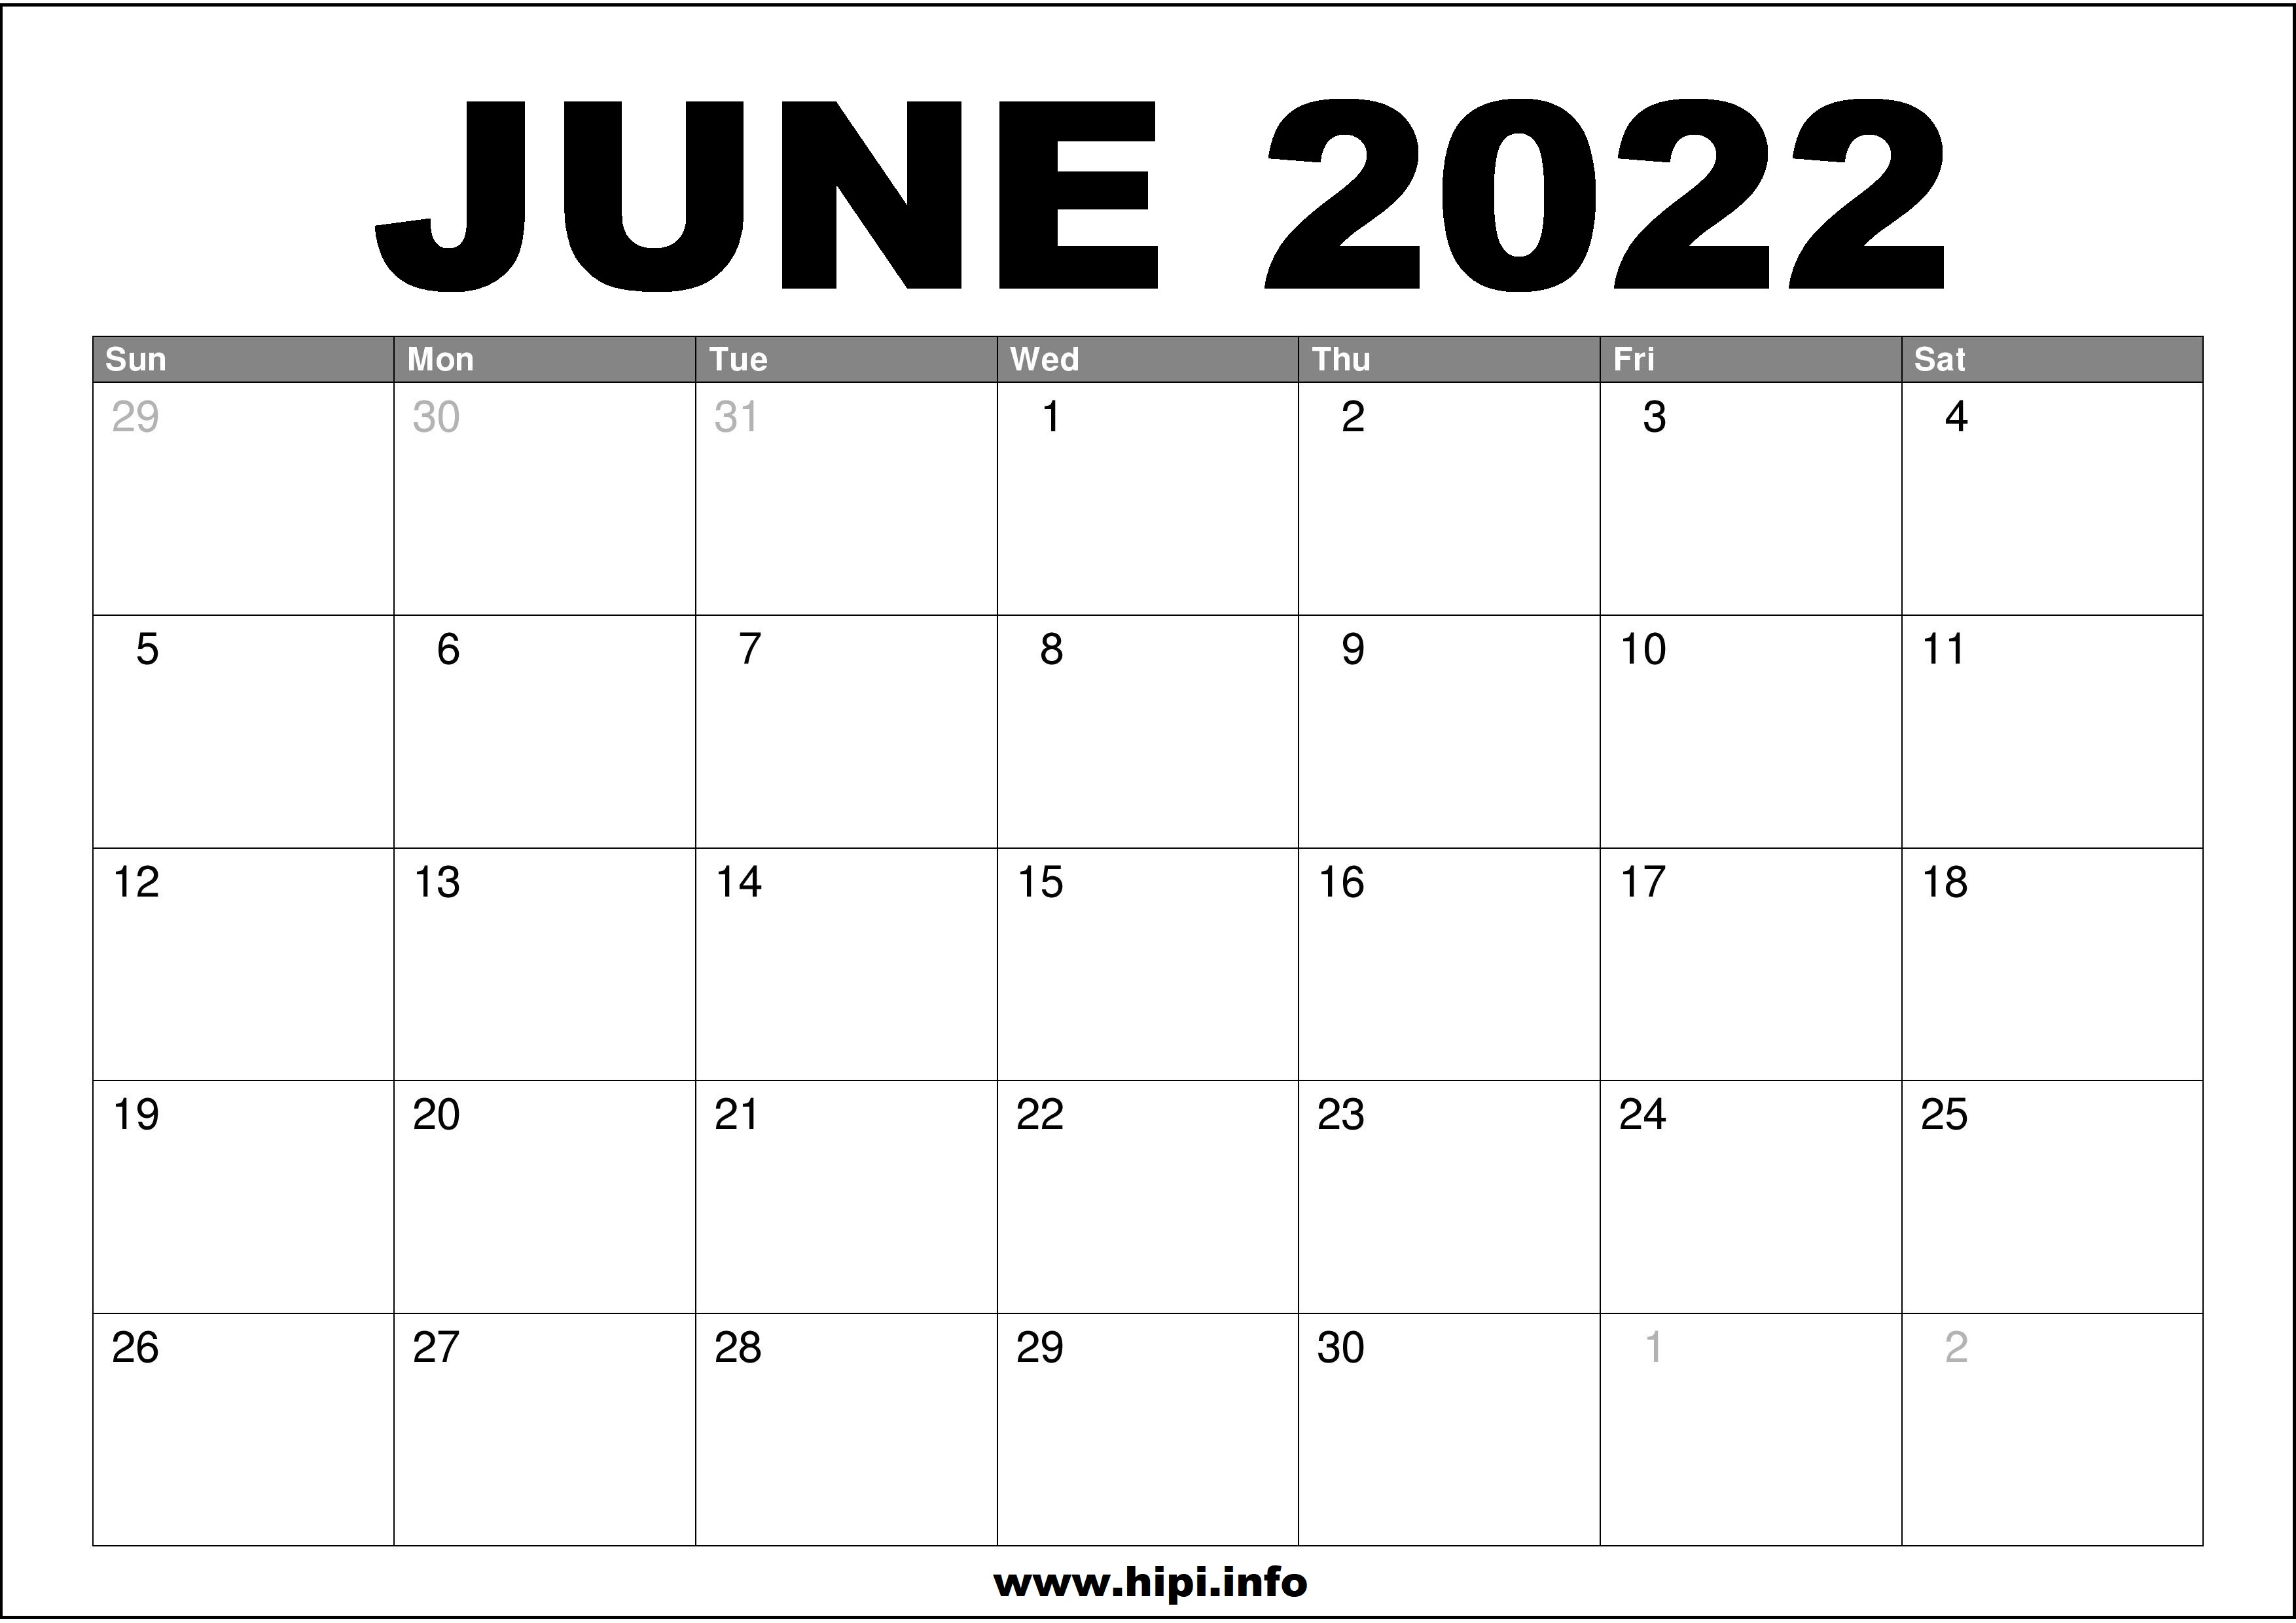 Printable 2022 June Calendar June 2022 Calendar Printable Free - Hipi.info | Calendars Printable Free